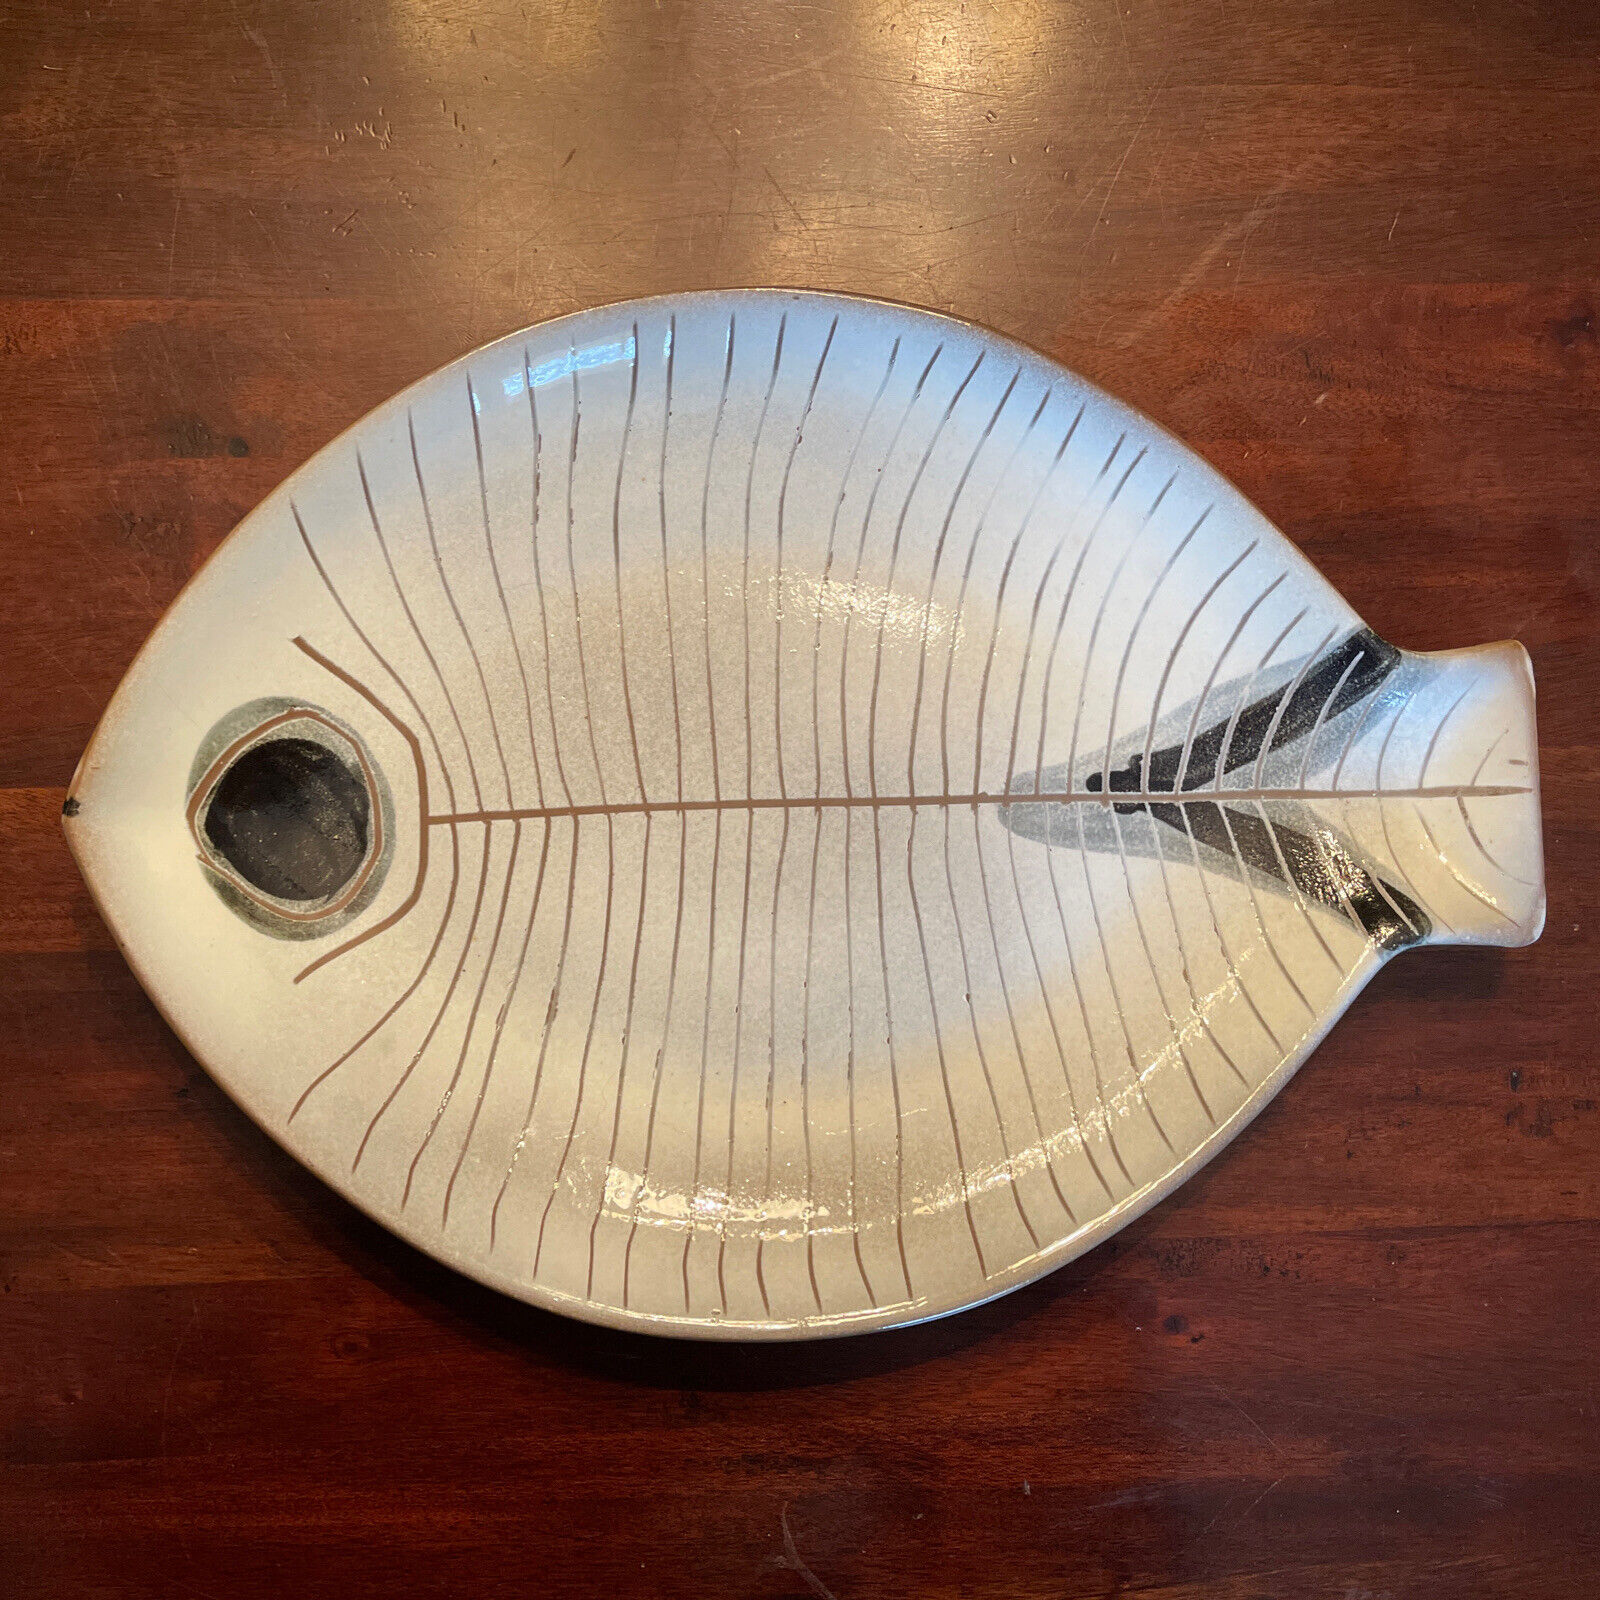 Vintage Midcentury Modern Art Pottery Serving Platter Plate Lagardo Tackett Fish